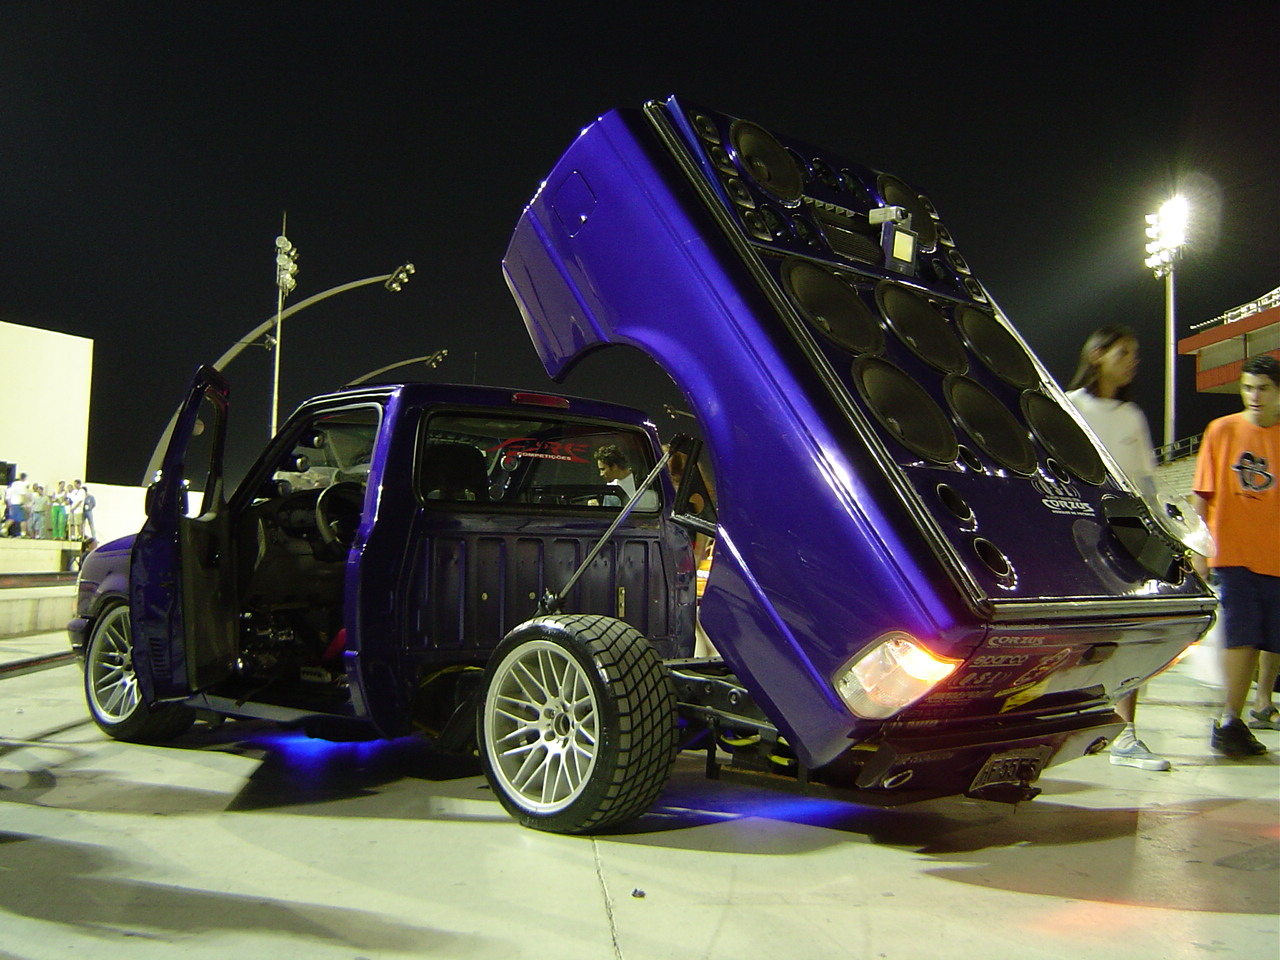 Ford_Ranger_Robocop
neon_azul_debaixo_do_carro
